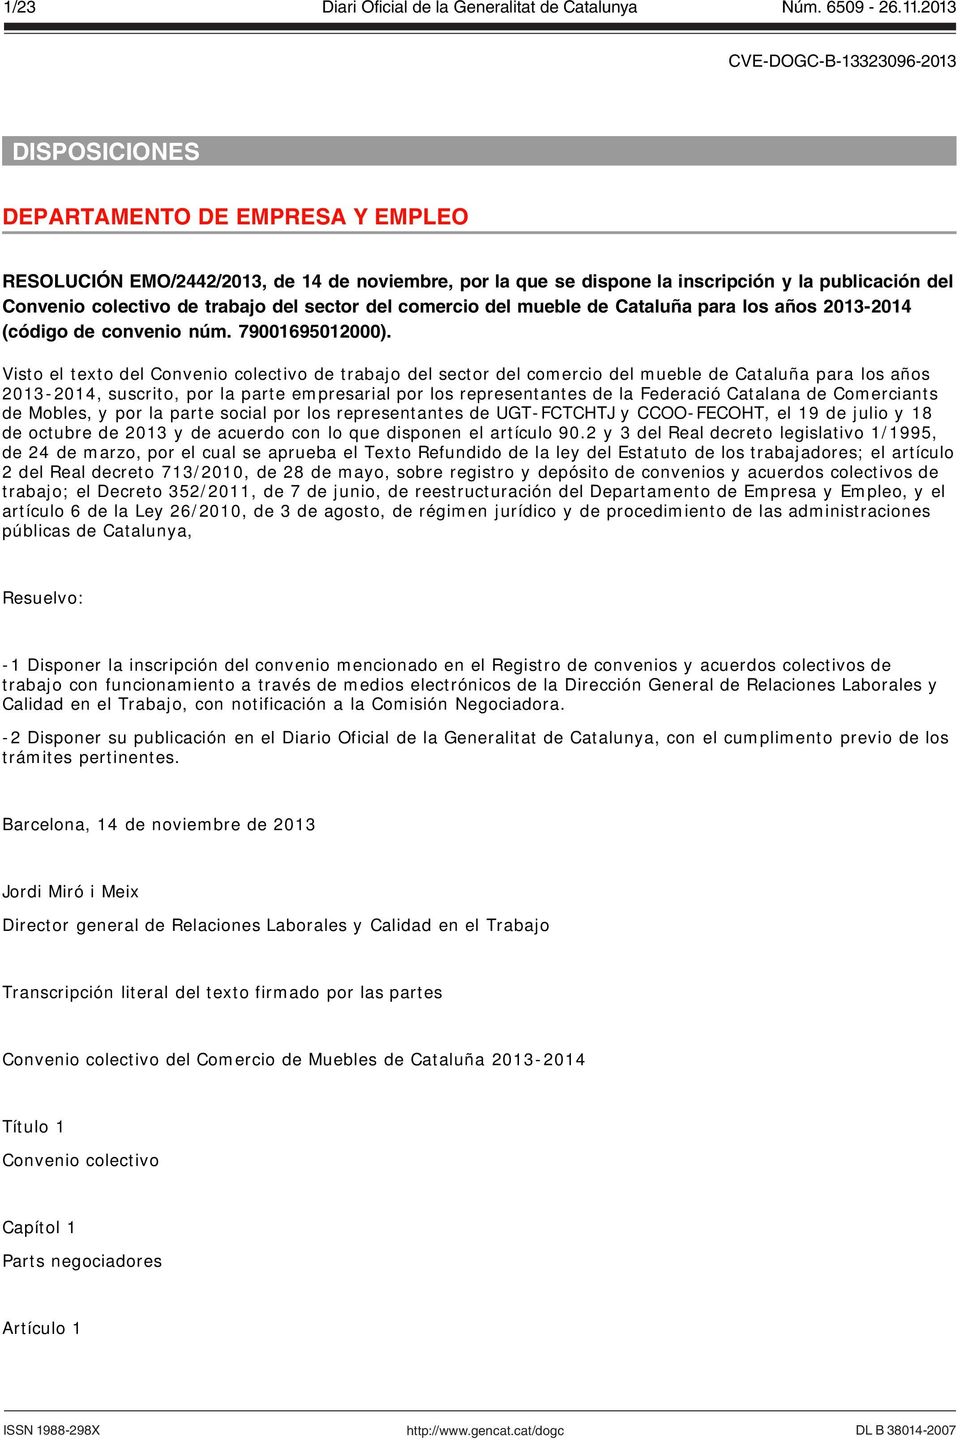 Visto el texto del Convenio colectivo de trabajo del sector del comercio del mueble de Cataluña para los años 2013-2014, suscrito, por la parte empresarial por los representantes de la Federació